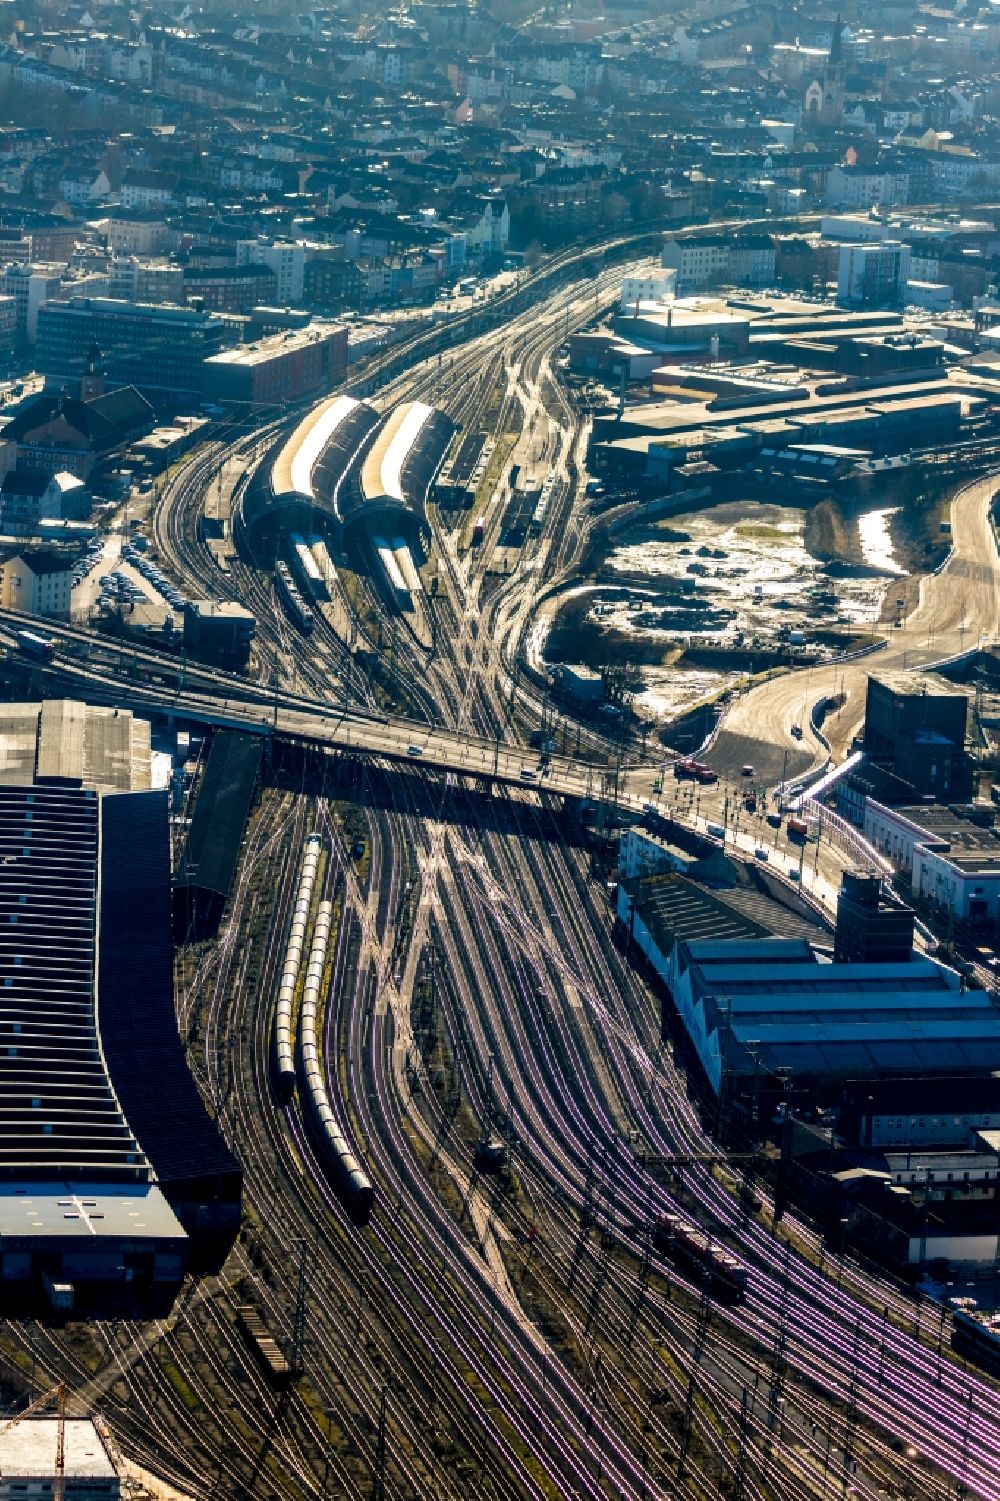 Luftaufnahme Hagen - Hauptbahnhof der Deutschen Bahn in Hagen im Bundesland Nordrhein-Westfalen, Deutschland